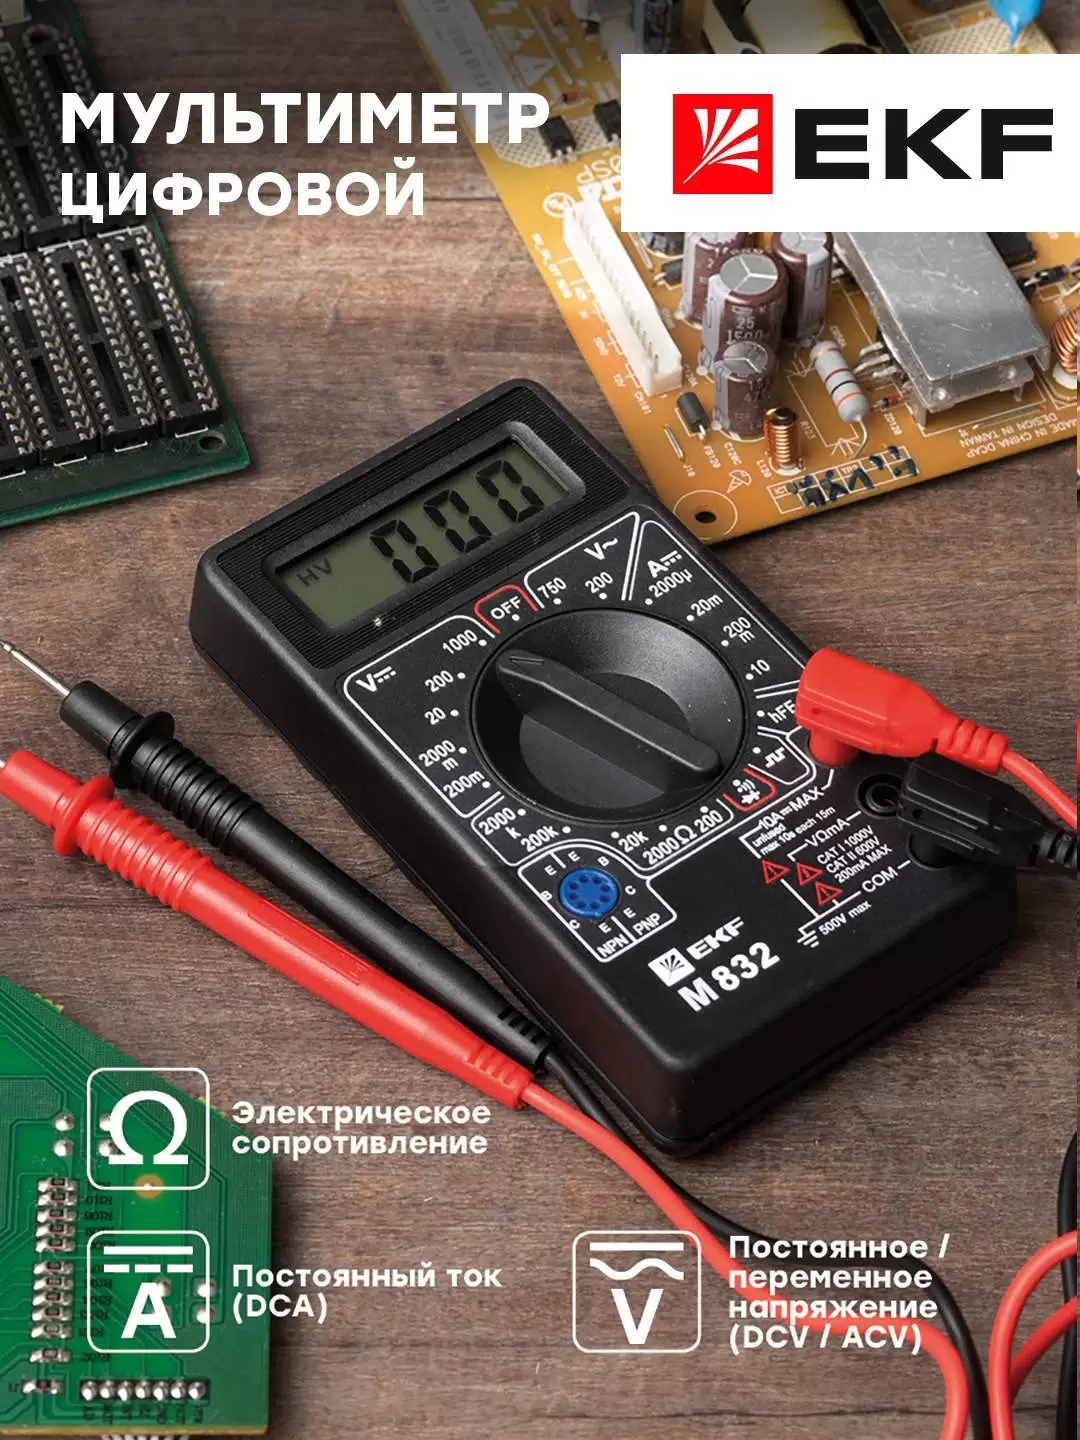 Мультиметр цифровой M832 EKF Master In-180701-bm832 - VLARNIKA в Донецке